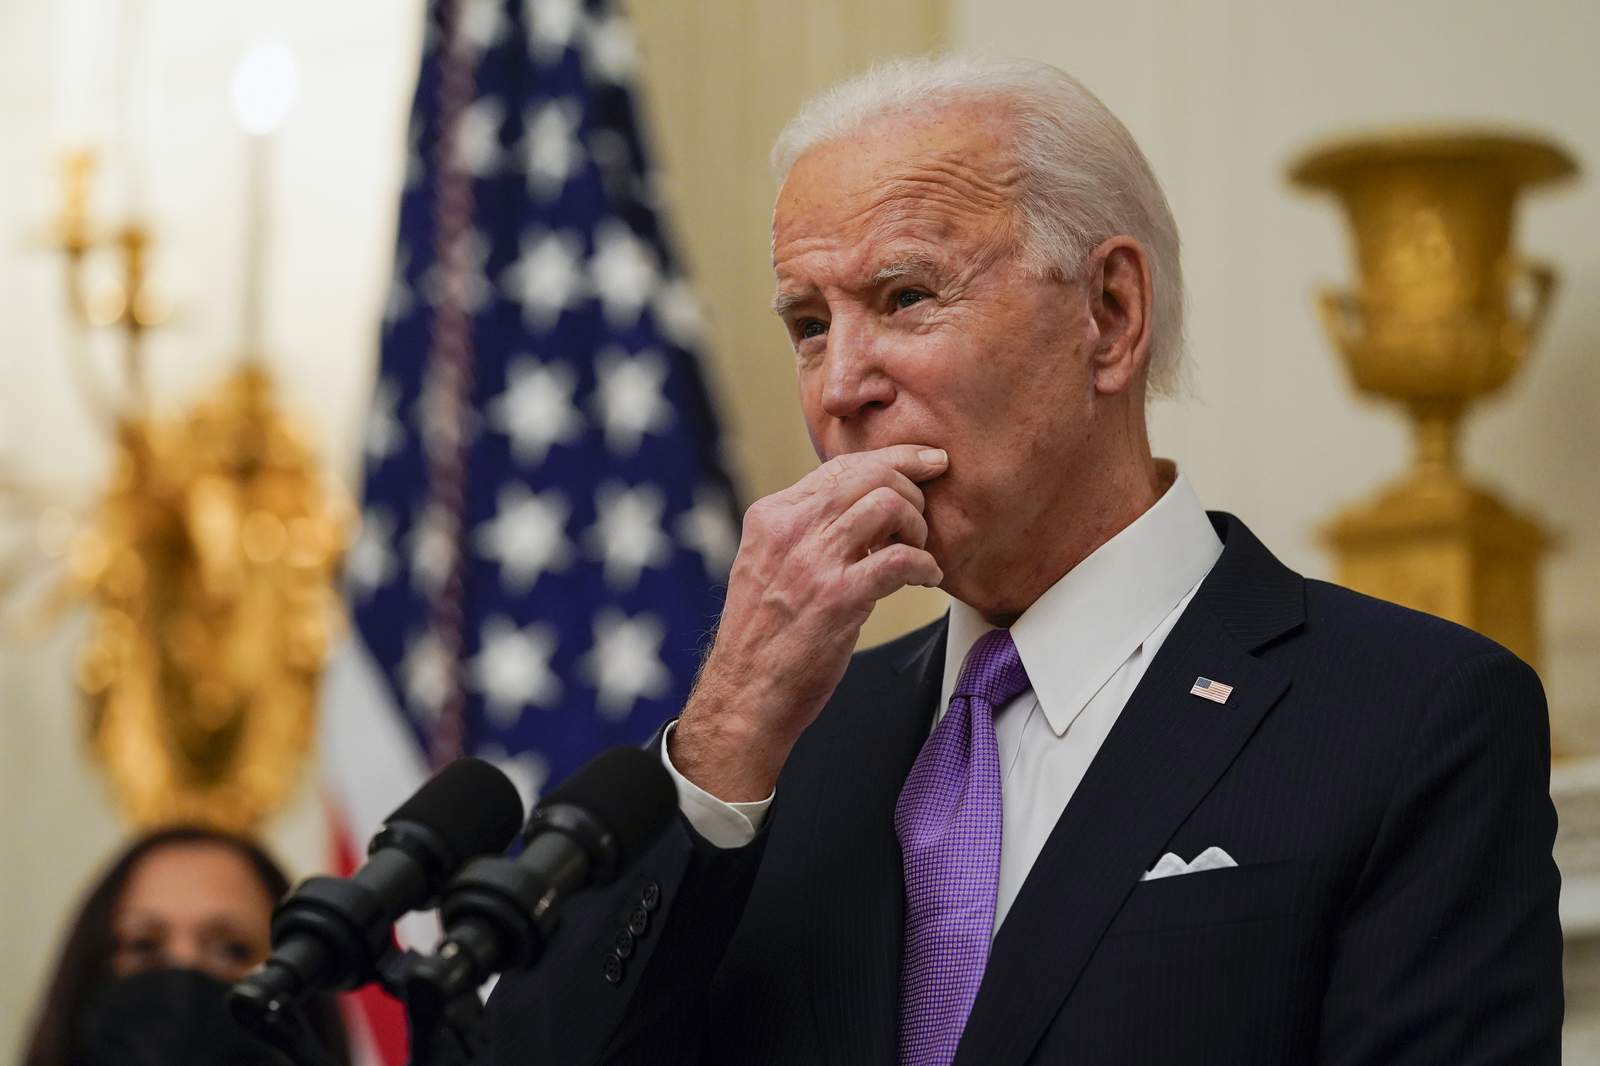 Food aid, unemployment: President Biden seeks stopgap help as talks start on big plan